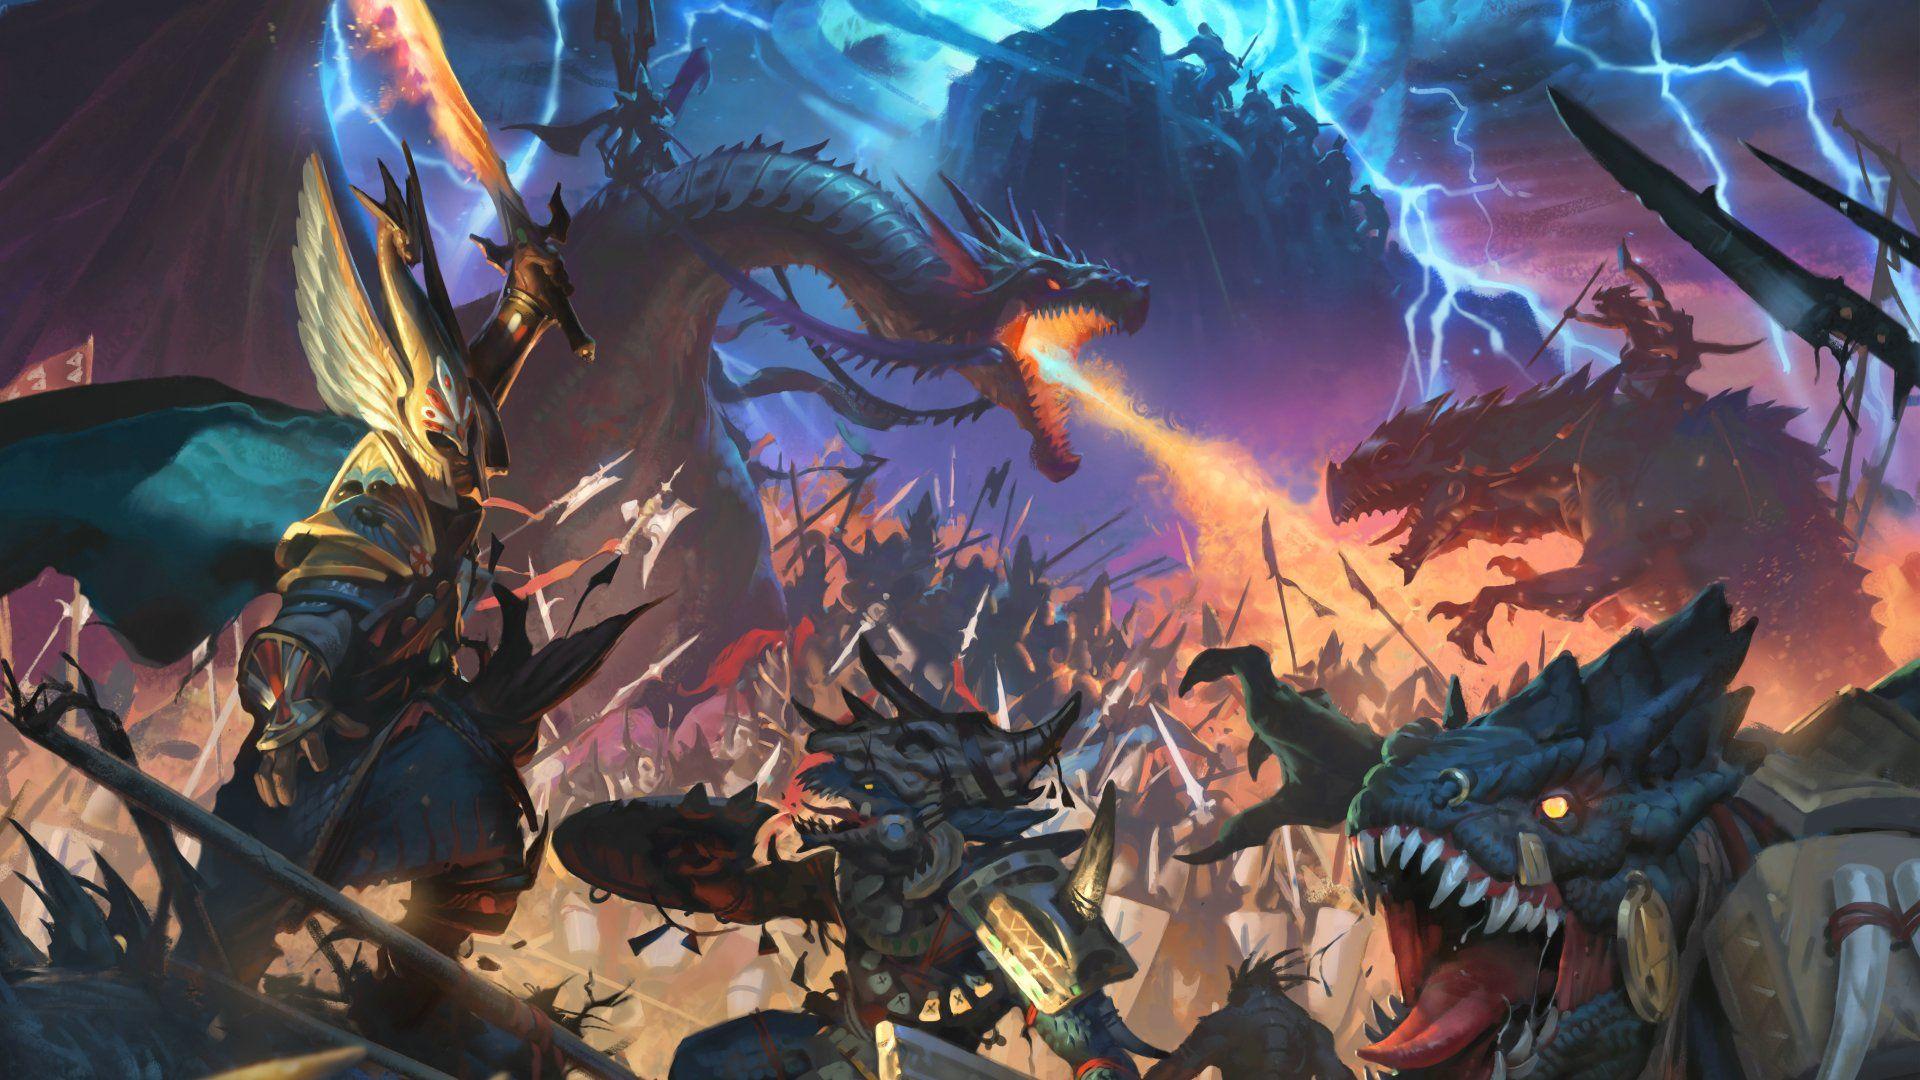 Total War Warhammer 2 Wallpapers - Top Free Total War Warhammer 2 ...